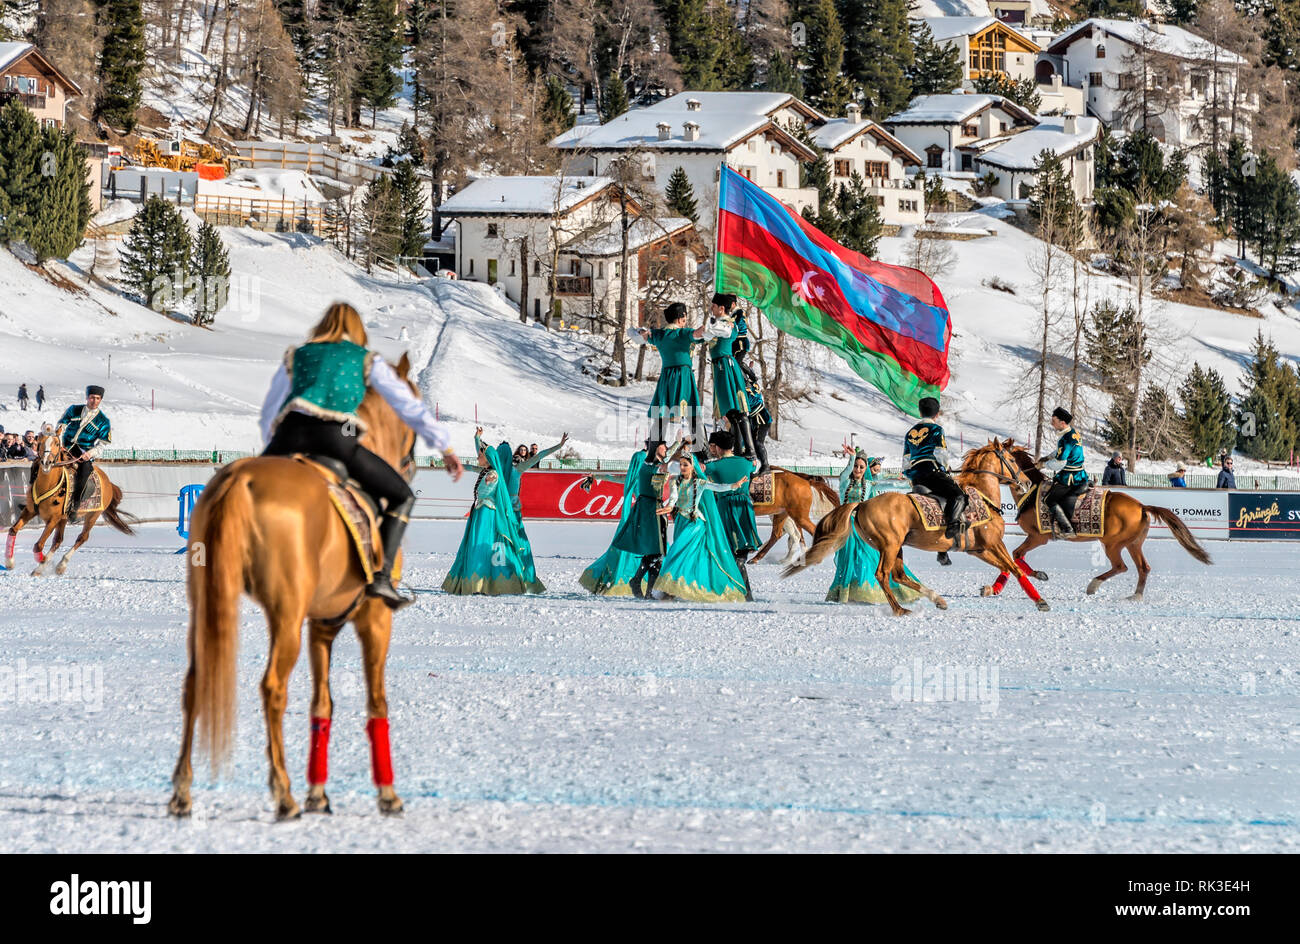 Piloti azerbaigiani durante uno spettacolo per la partita della Snow Polo World Cup 2019, St Moritz, Svizzera Foto Stock